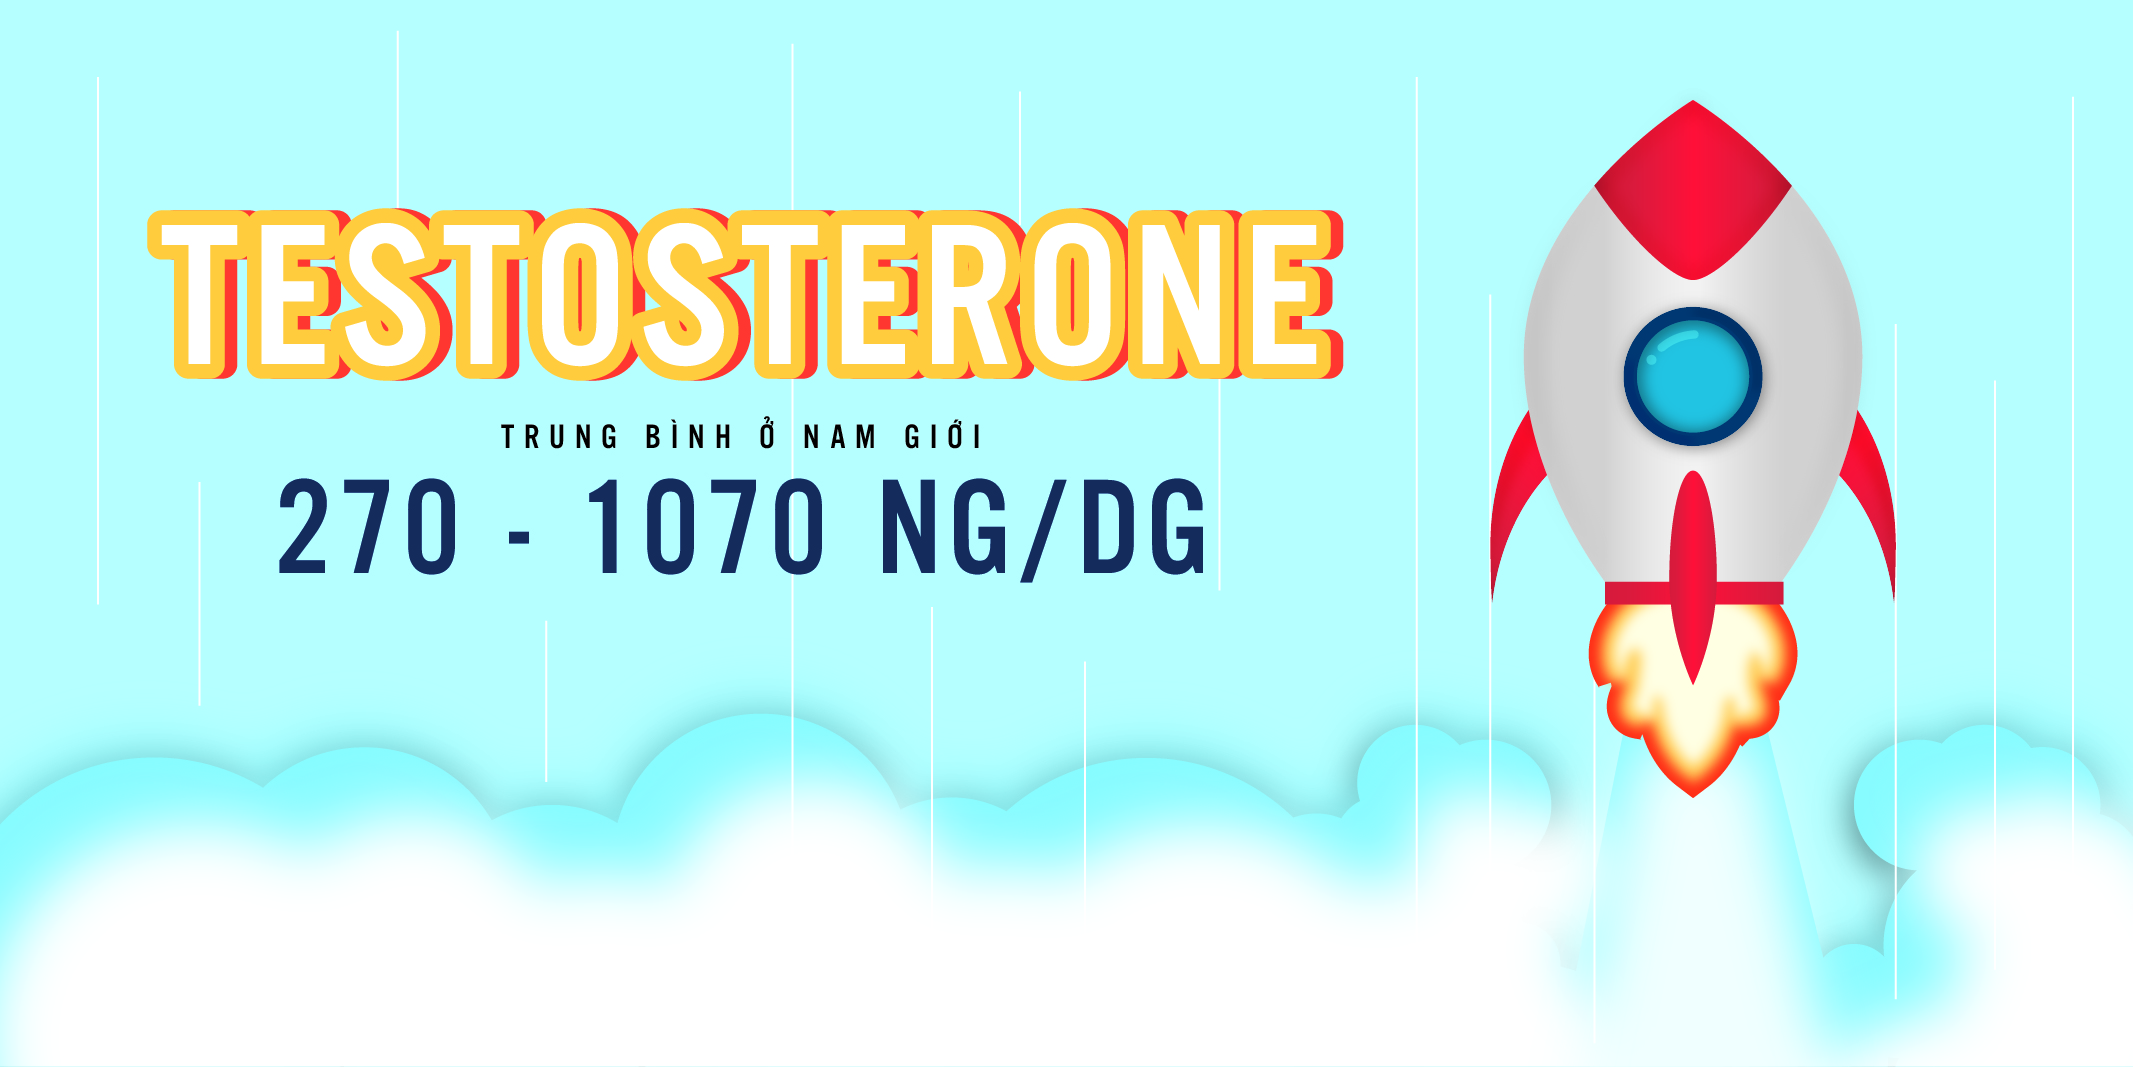 Lượng Testosterone trung bình ở nam giới 